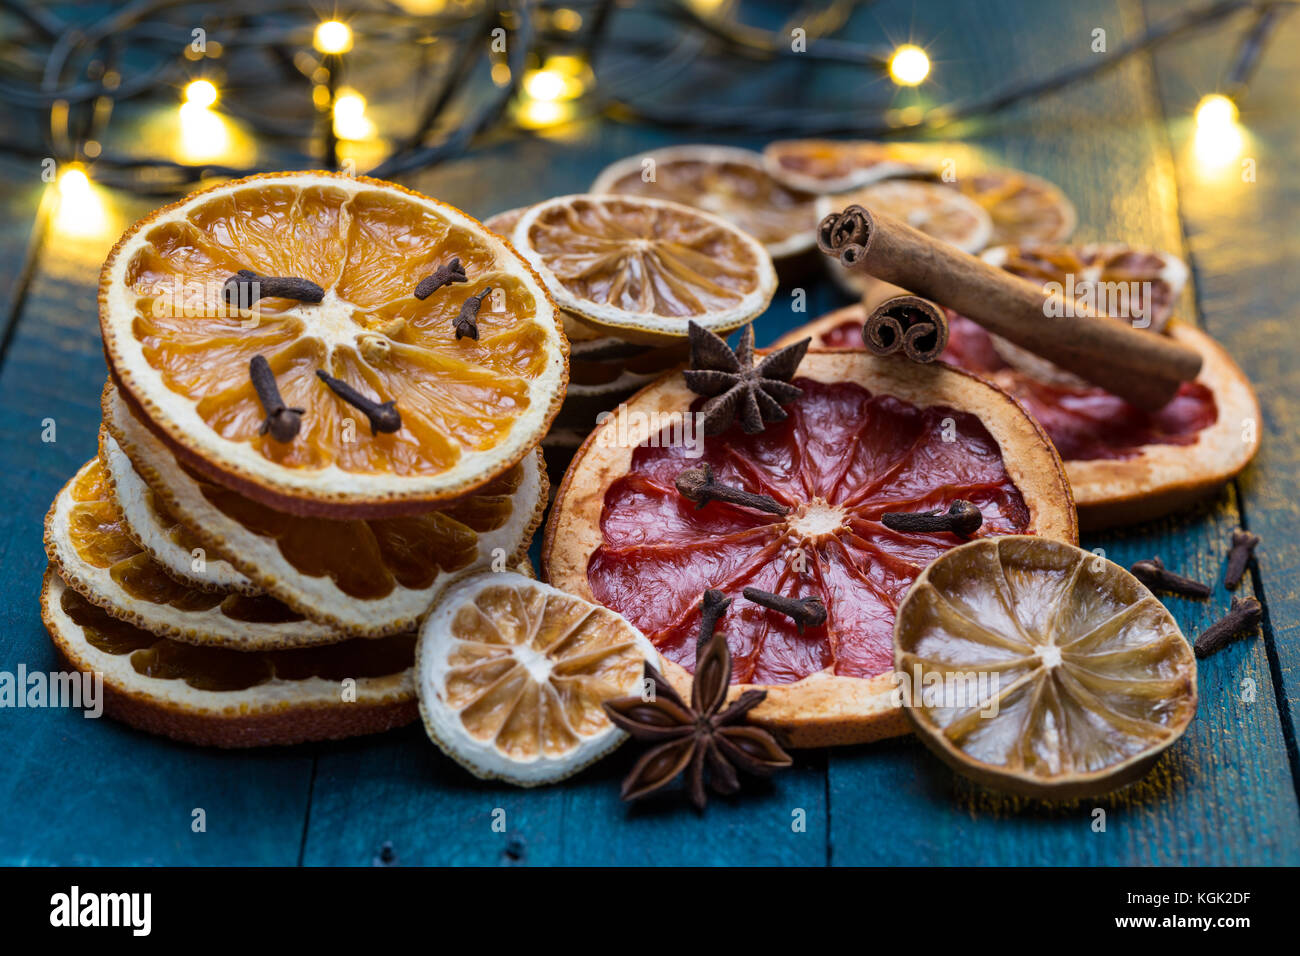 Orangen, Zitronen, Limonen-, Limetten- und Pampelmusensäfte mit Zimt, Anis und Nelke auf Benzin - farbige Holz getrocknet. Stockfoto